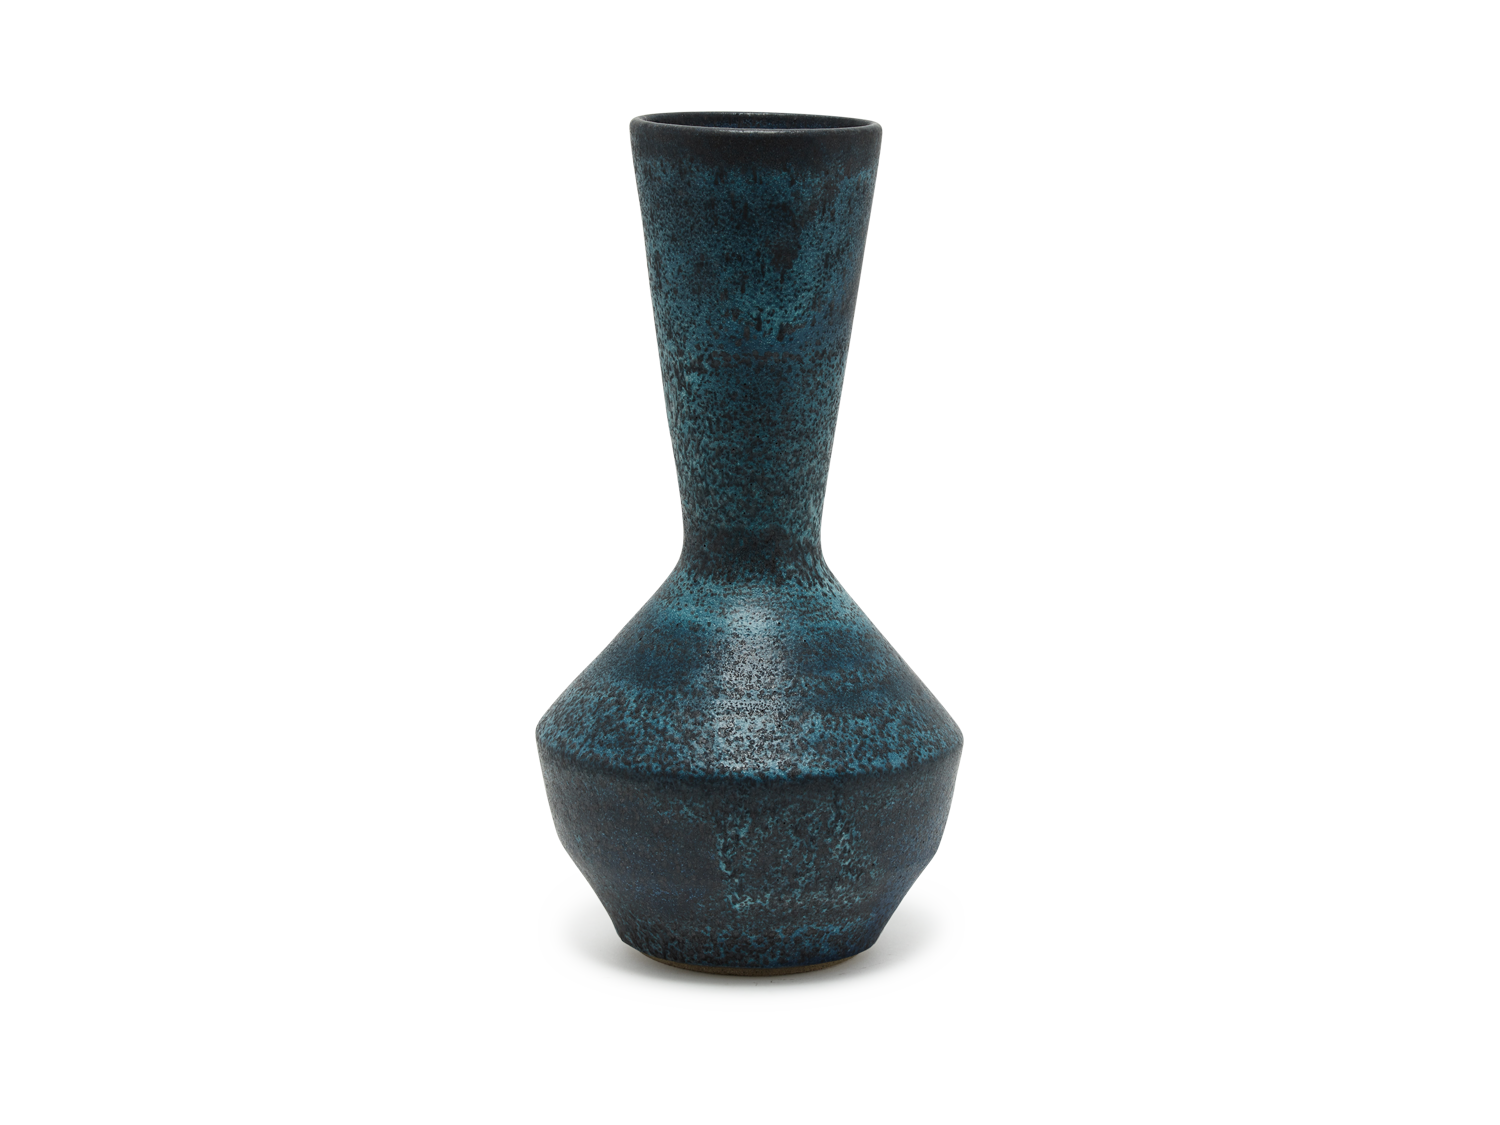 Coned Necked Vase